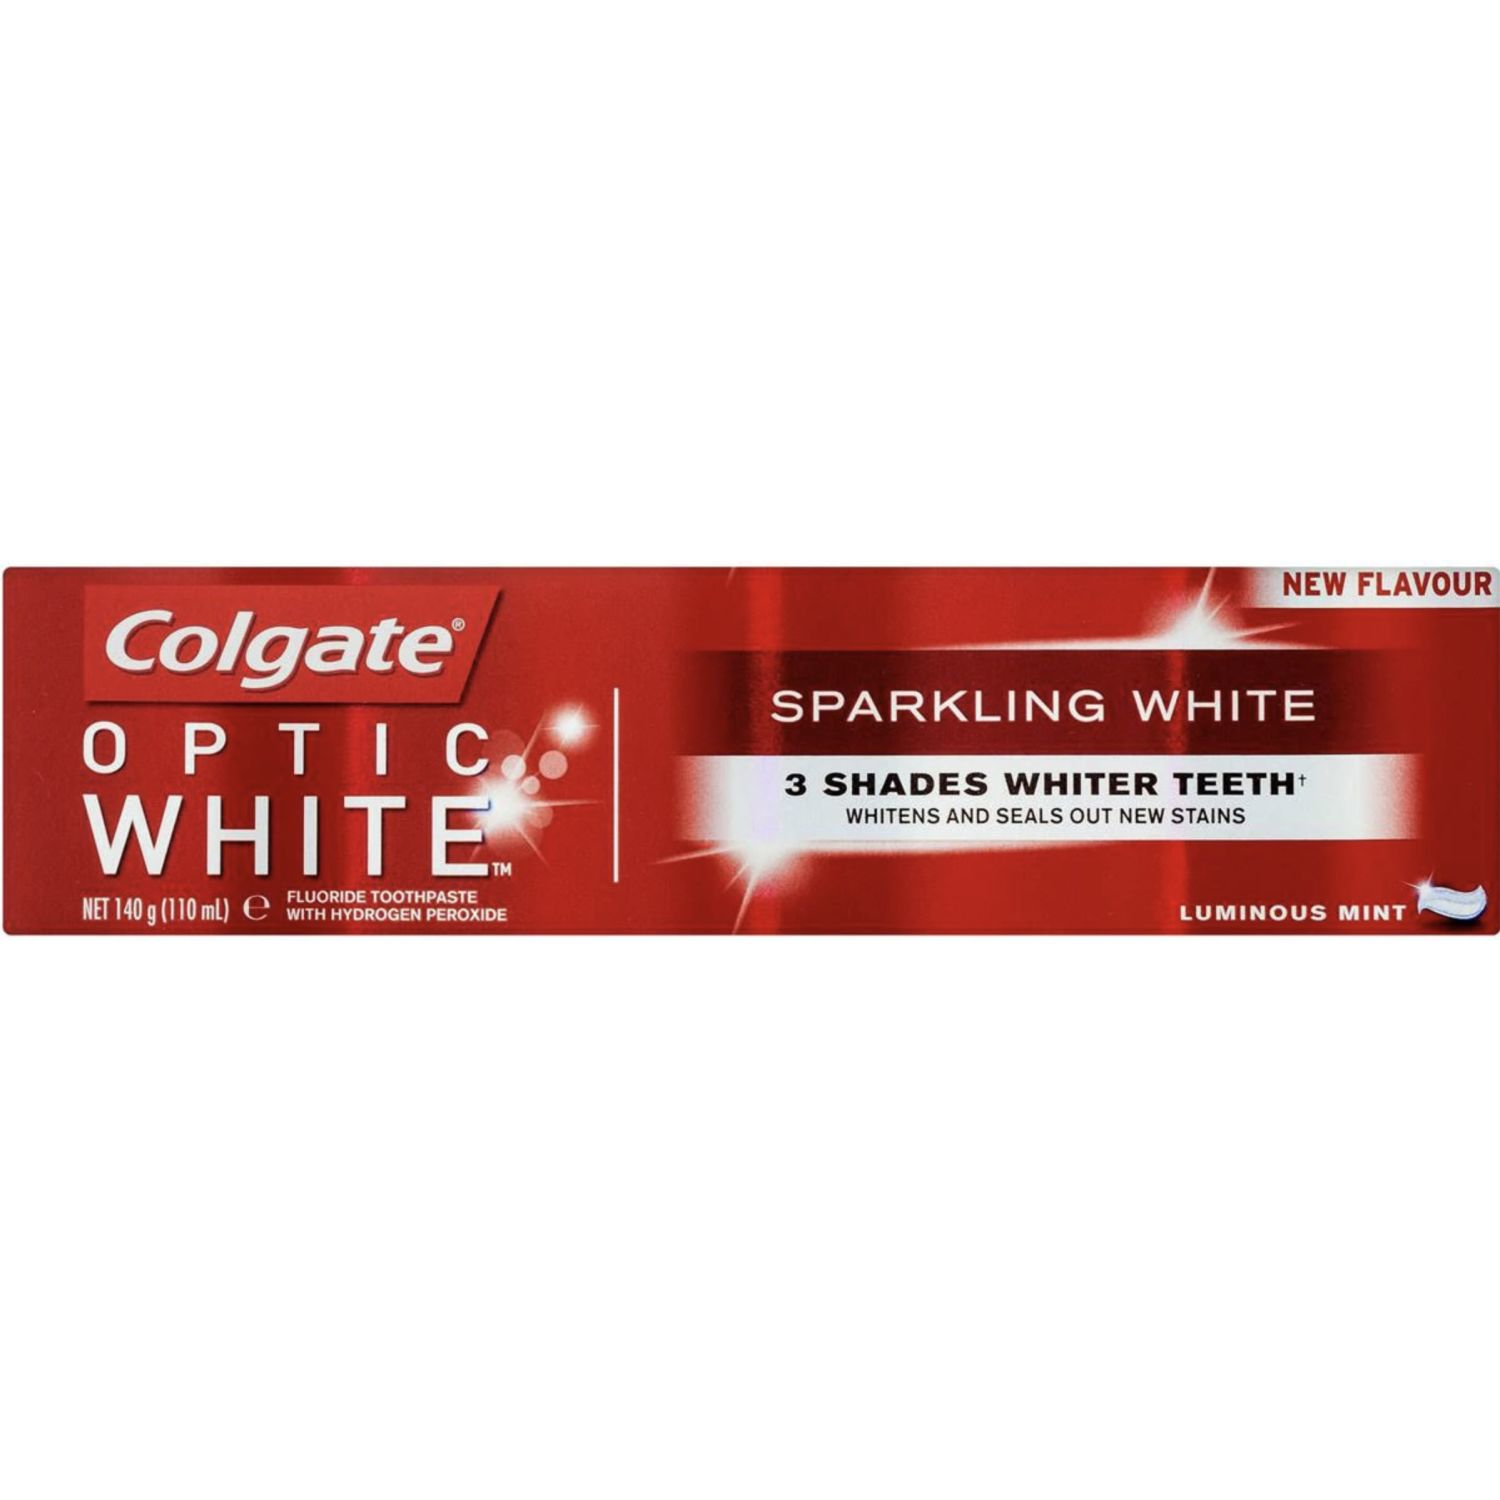 Colgate Optic White Sparkling White Teeth Whitening Toothpaste, 140 Gram